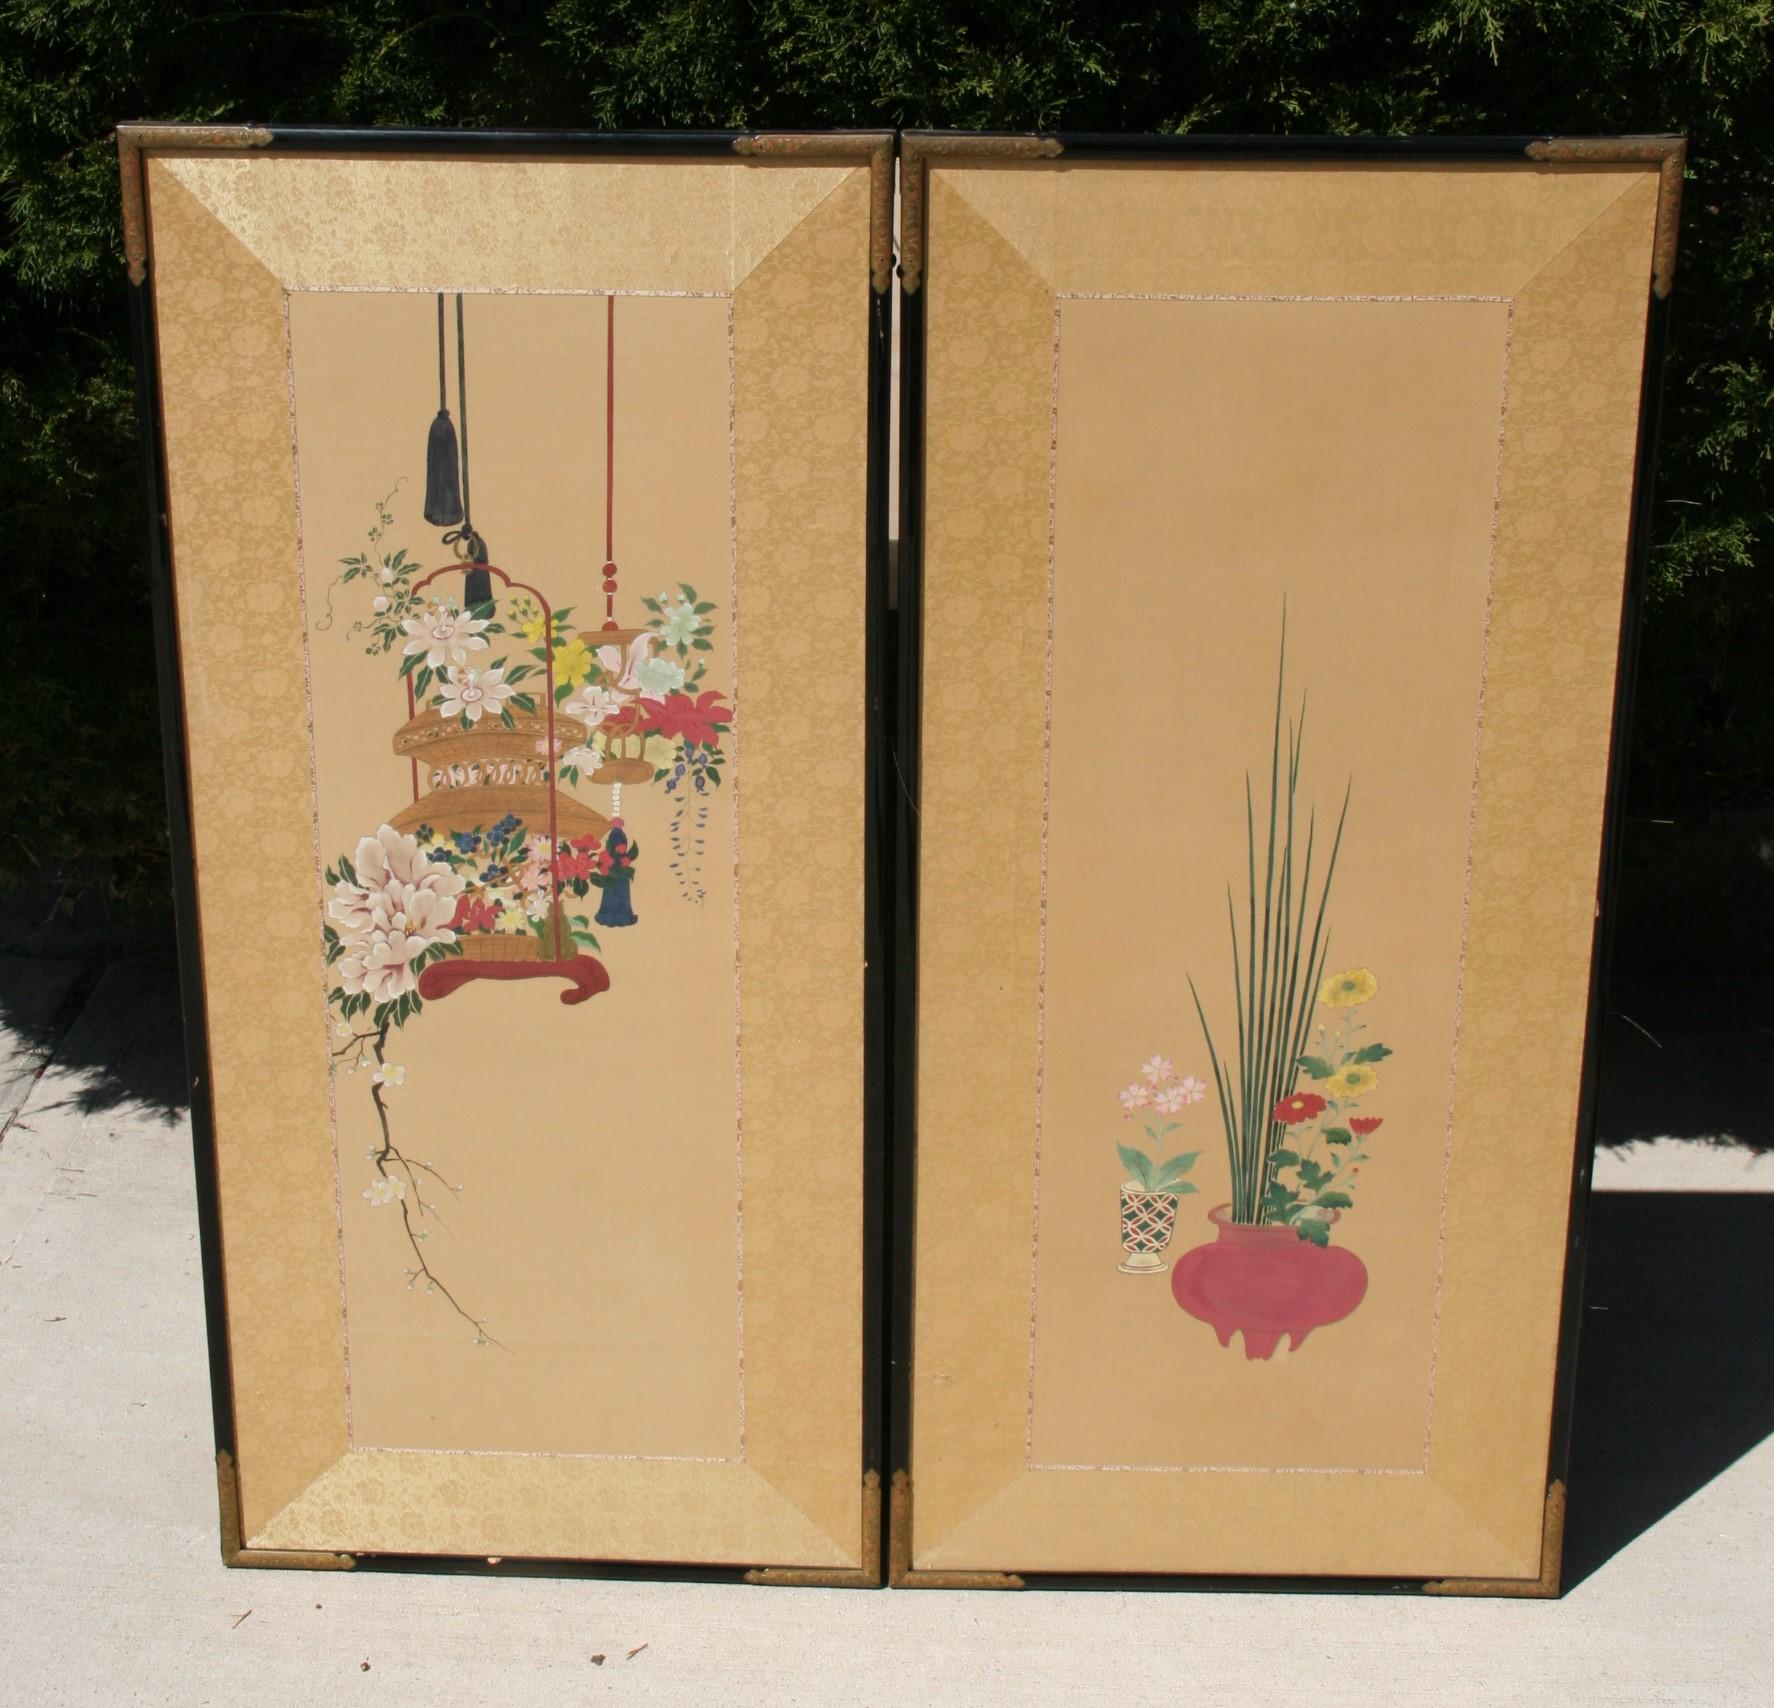 3-500 Paar handbemalte Japaner  Platten/Bildschirme
Maße: Einzelne Platte 20,5 x 44
Zusammen 41 x 44